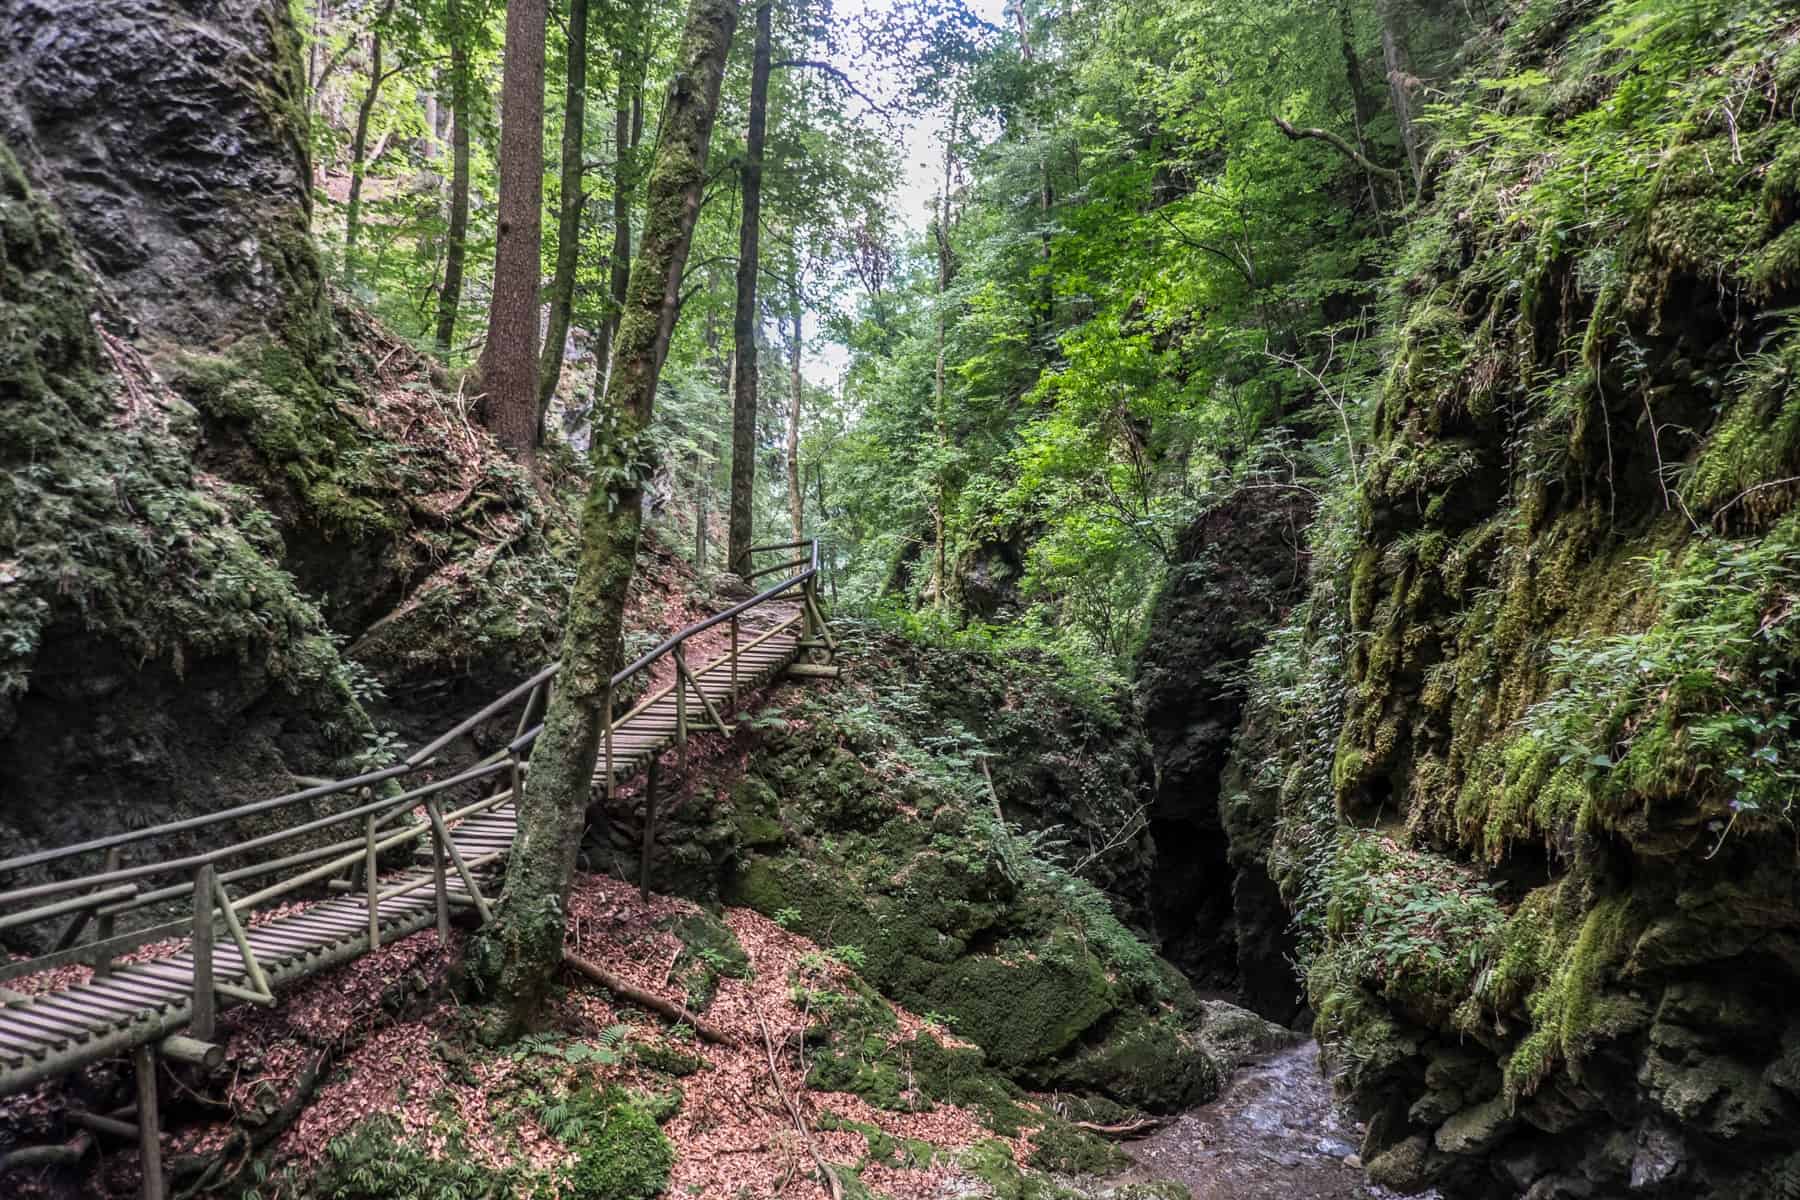 A wooden walkway winds through a deep forest of green as part of a hike through the Kesselfallklamm in Graz